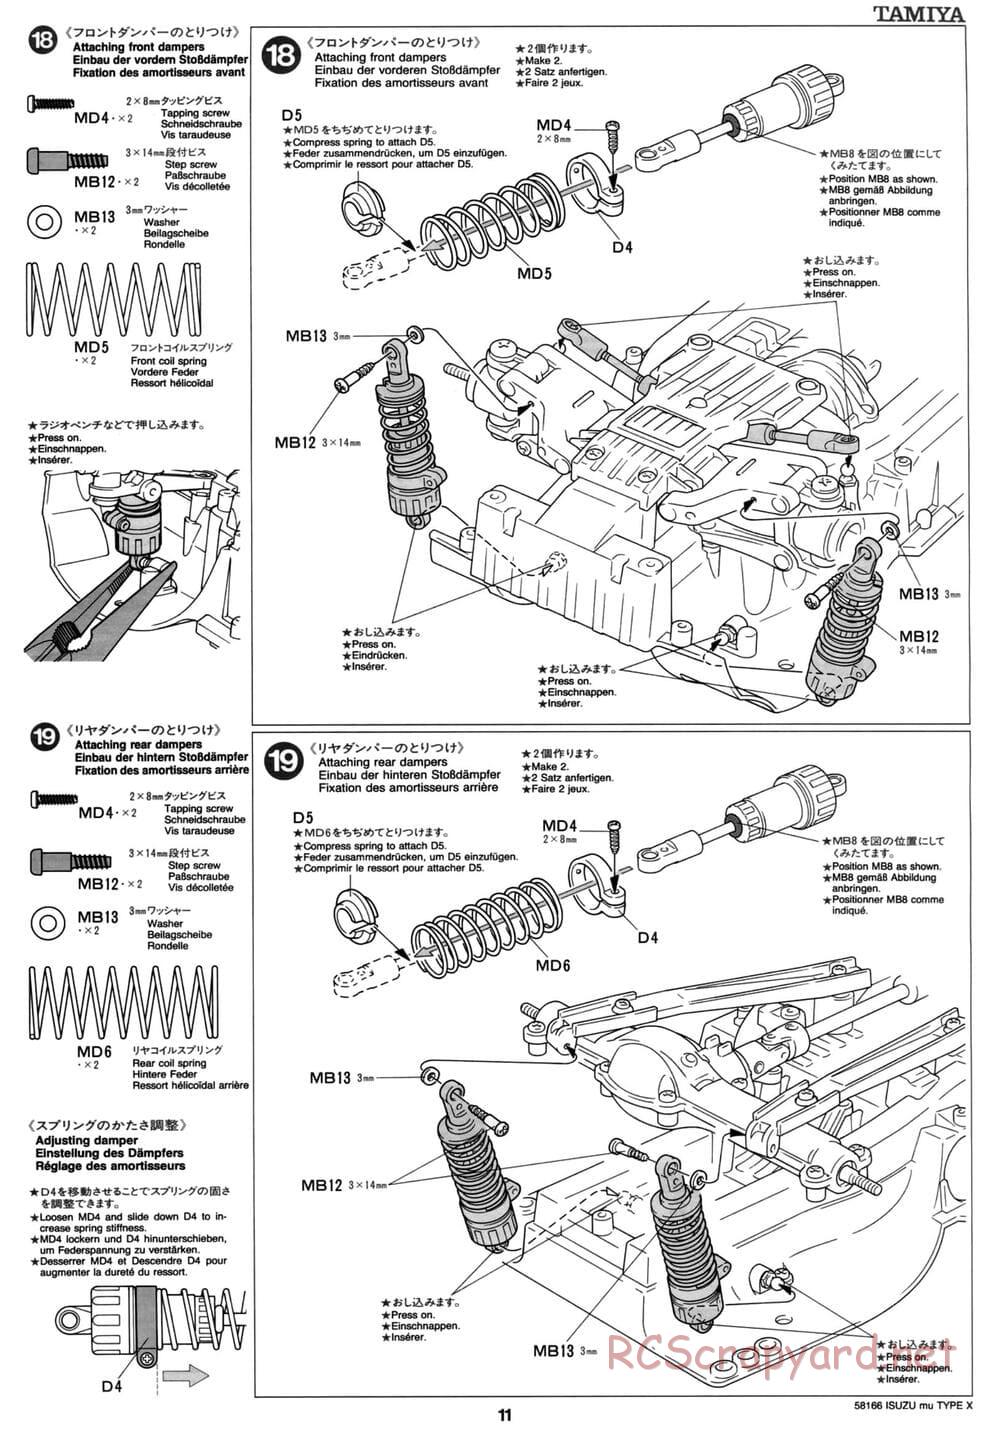 Tamiya - Isuzu Mu Type X - CC-01 Chassis - Manual - Page 11